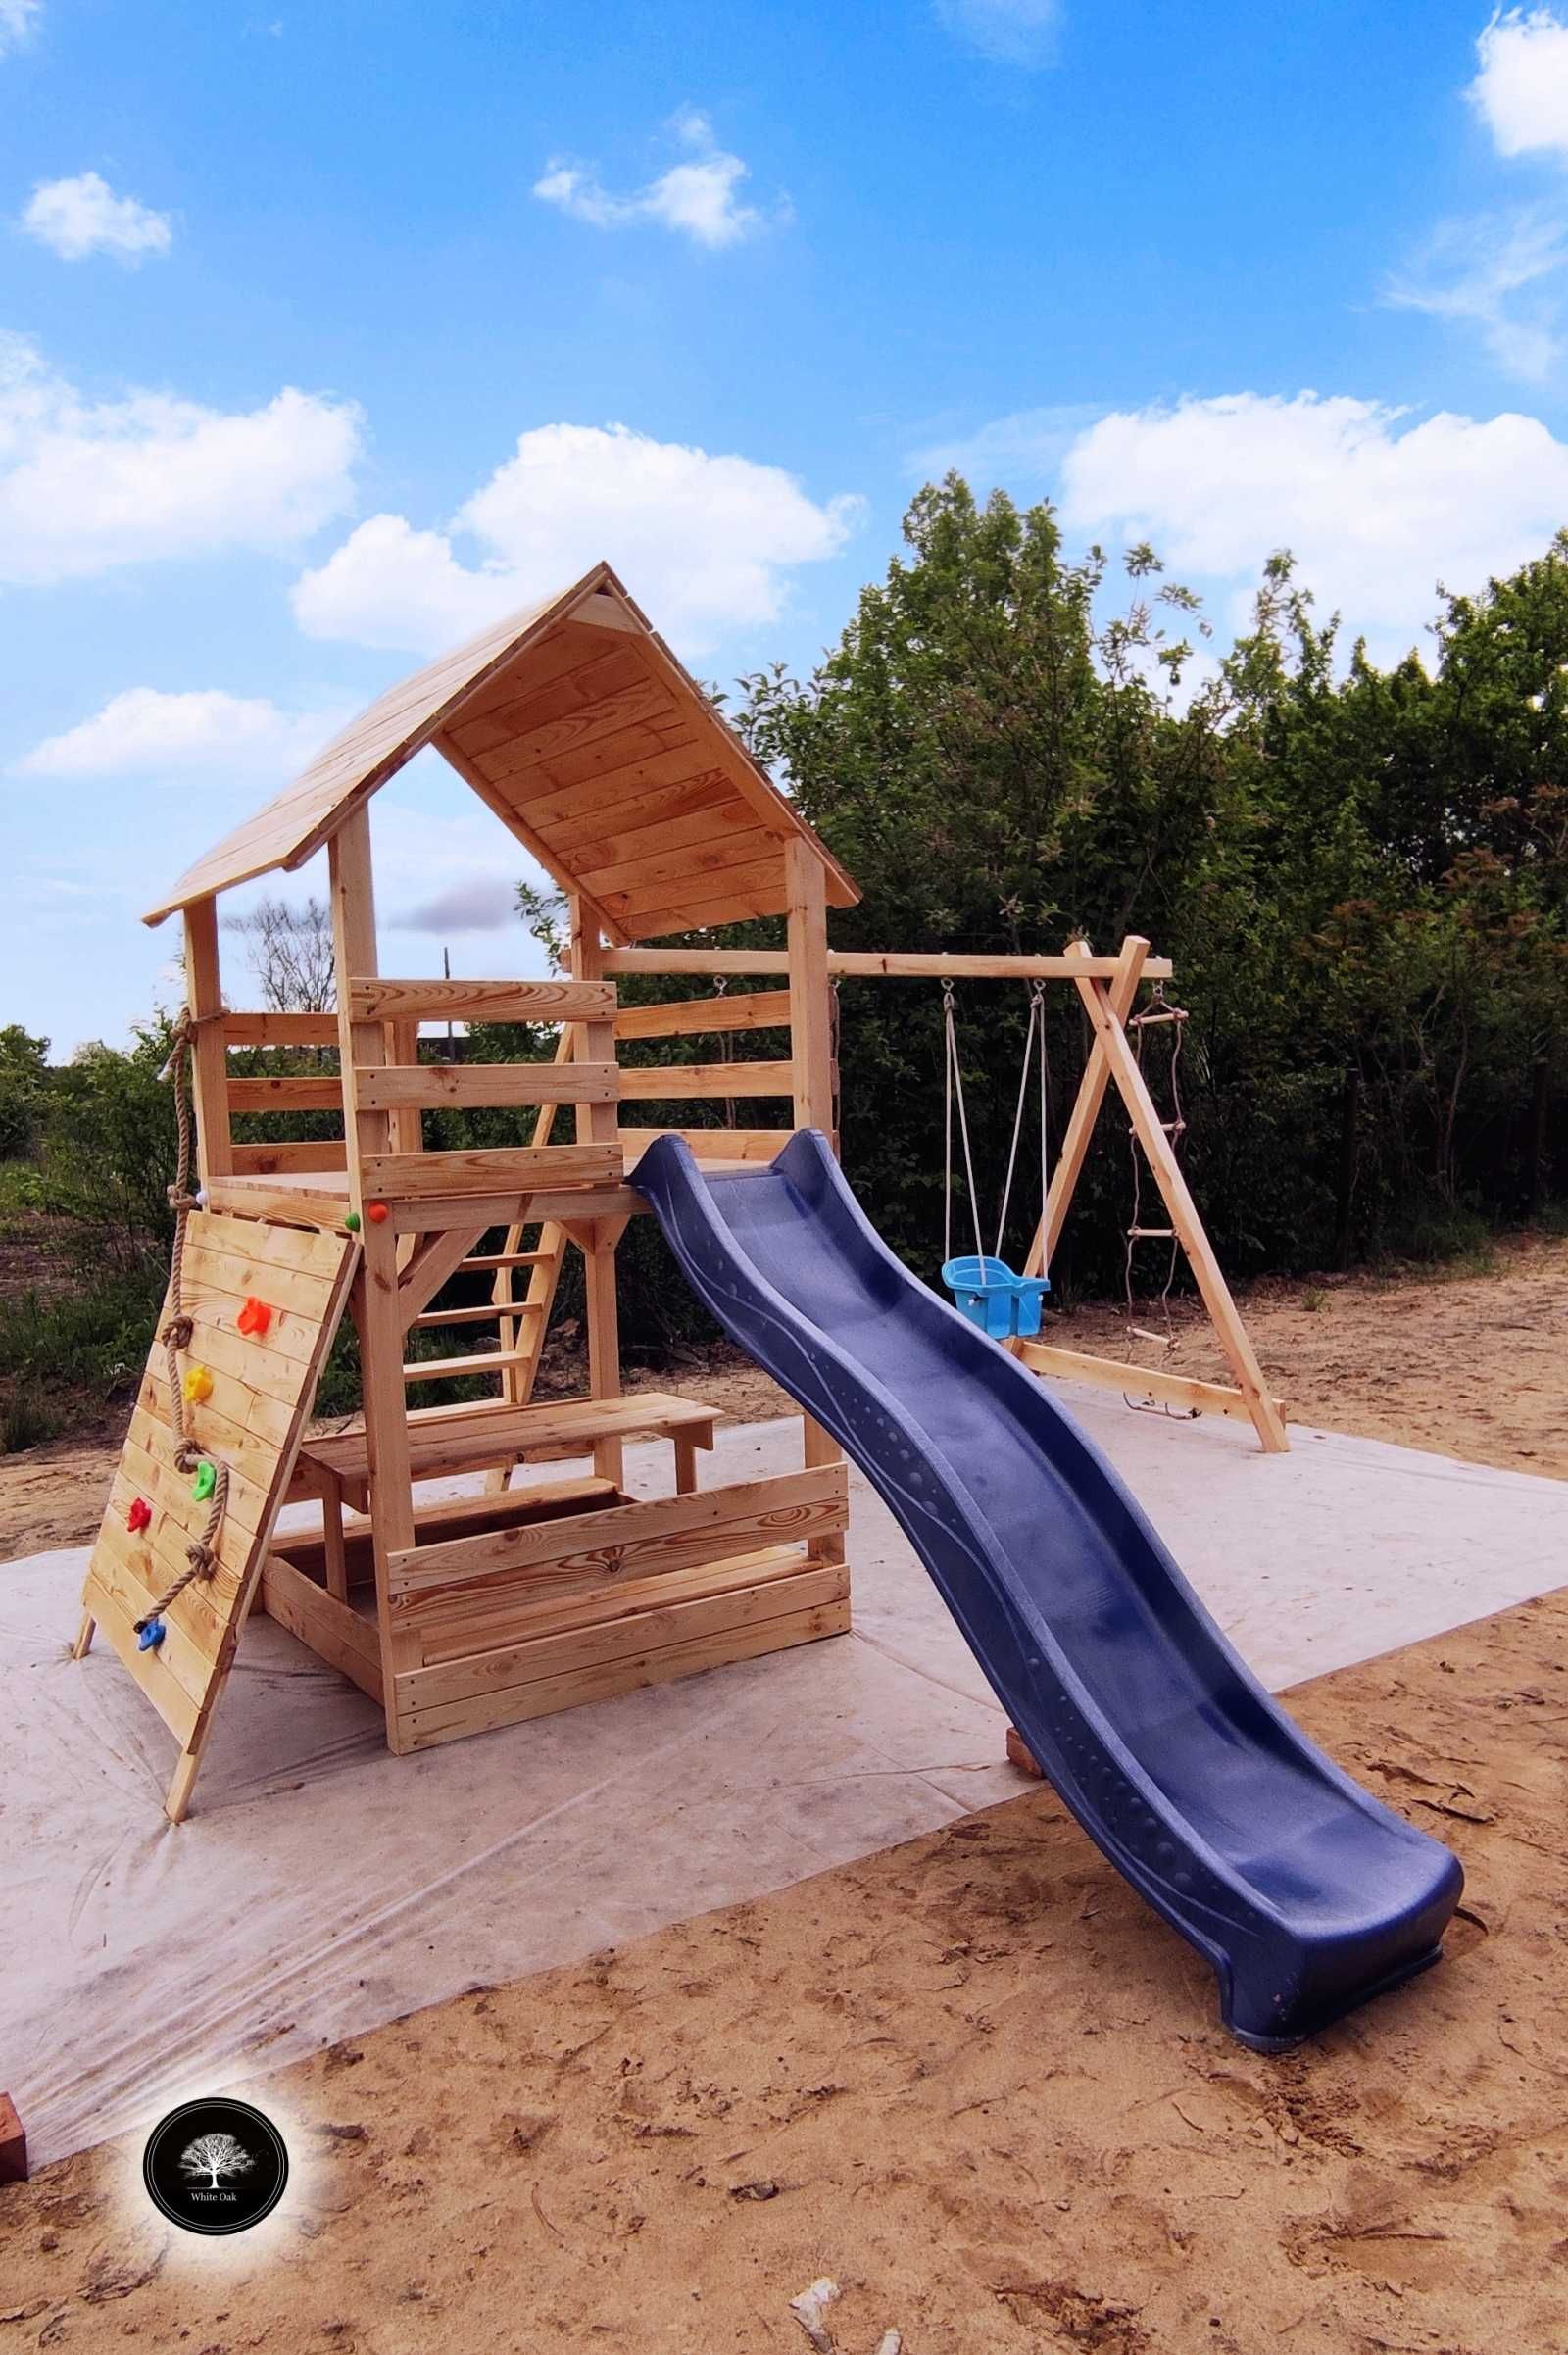 Drewniany plac zabaw, kompletny, domek dziecięcy, montaż GRATIS